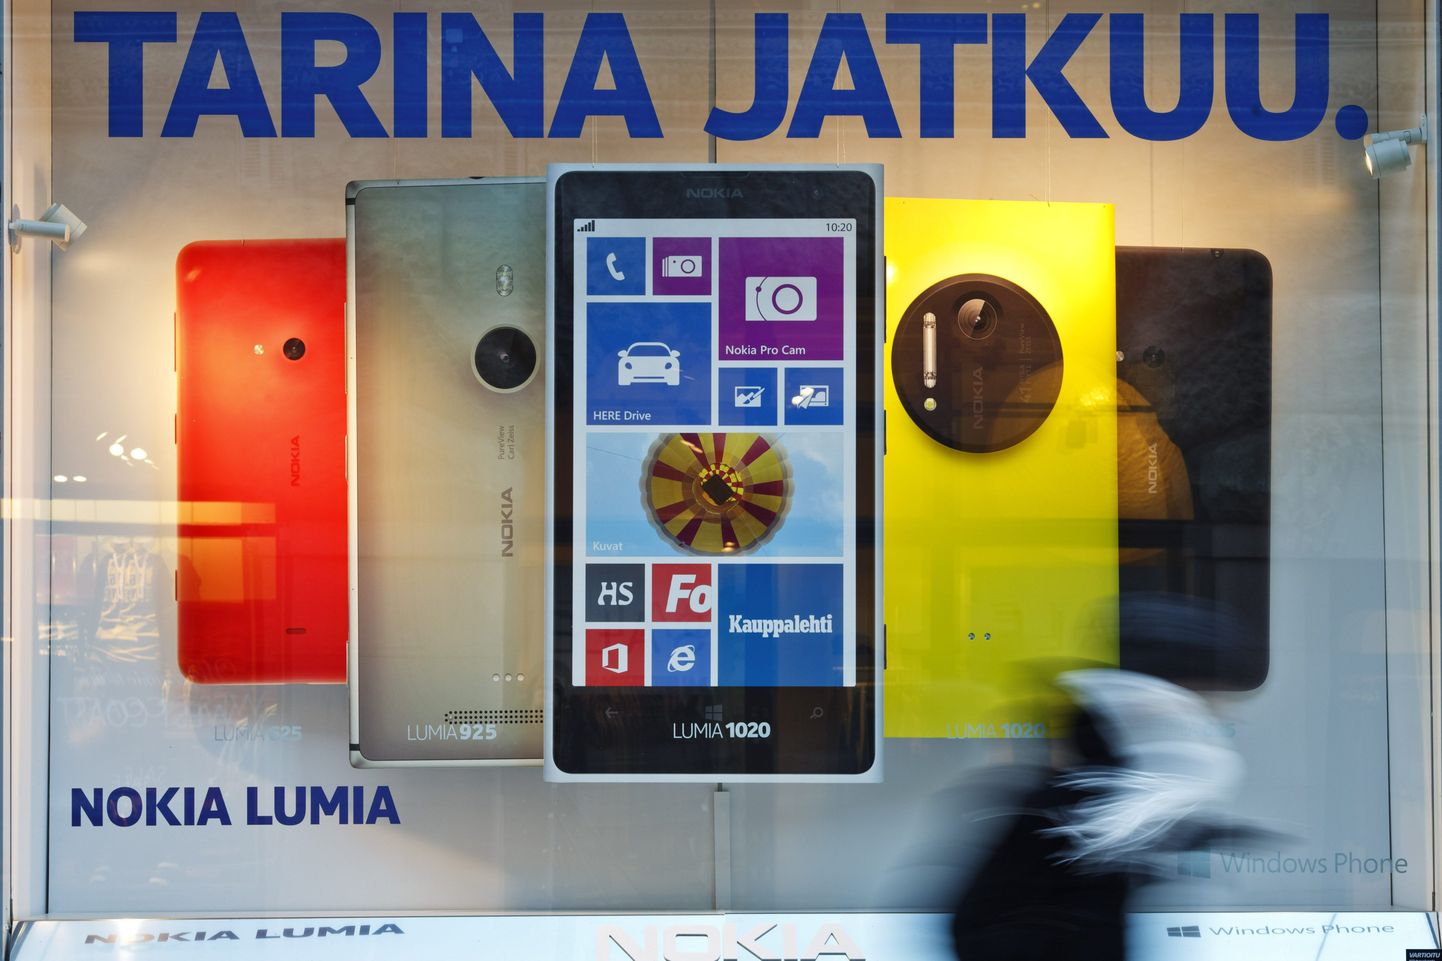 Kuigi reklaam väidab, et lugu jätkub, jäi Nokia klaster liiga kauaks harjunud rajale.